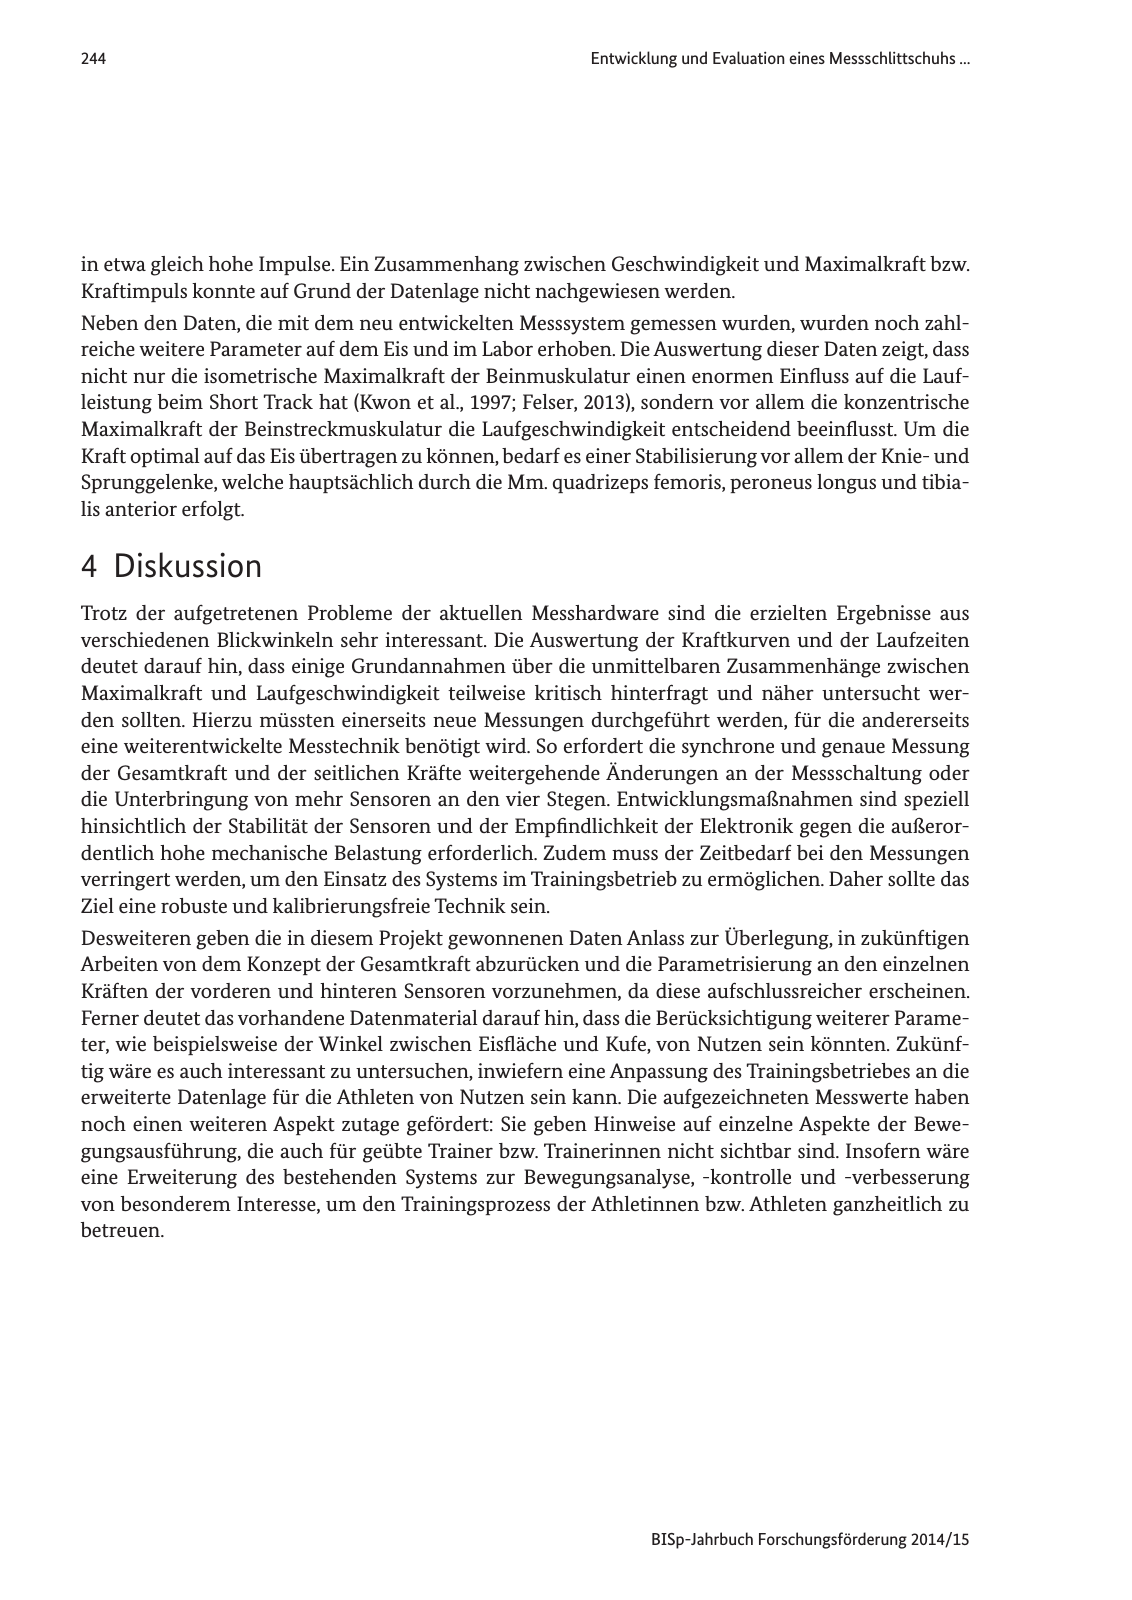 Vorschau Jahrbuch 2014/15 Seite 245